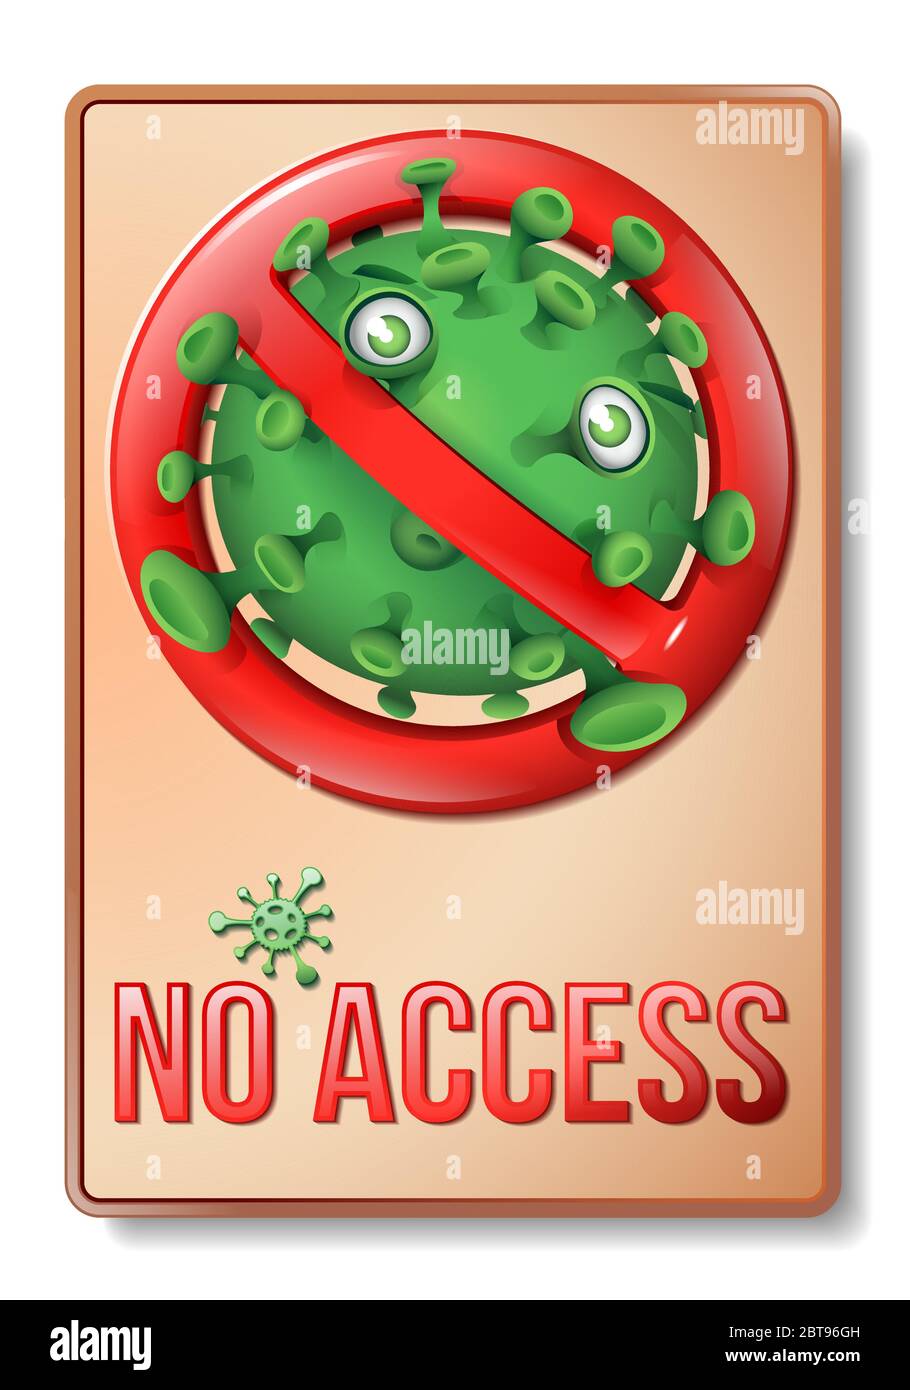 Ein Retro-Stil Prohibition-Schild mit einem niedlichen lustigen grünen Virus - No Access Stock Vektor